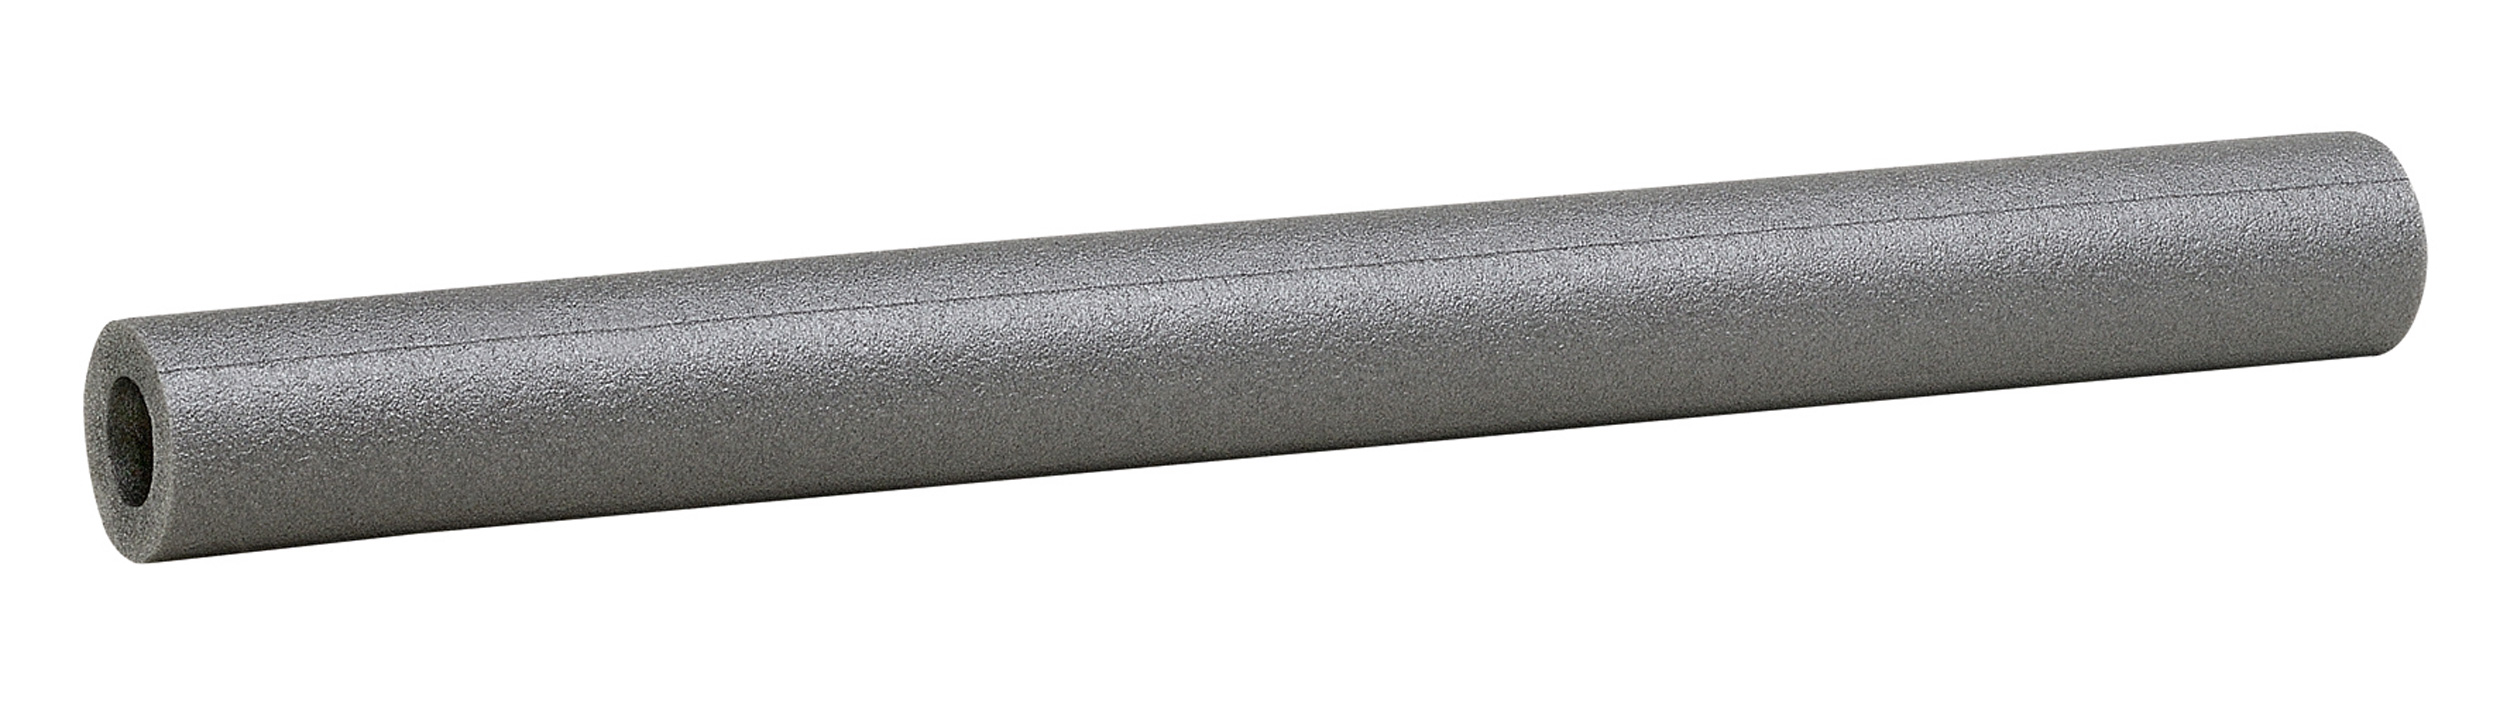 CLIMAPOR - Gaine d'isolation préfendue - en PE - gris - pour tuyauteries - 15/20 - 1/4 pouce - longueur 1 m - épaisseur paroi 20 mm